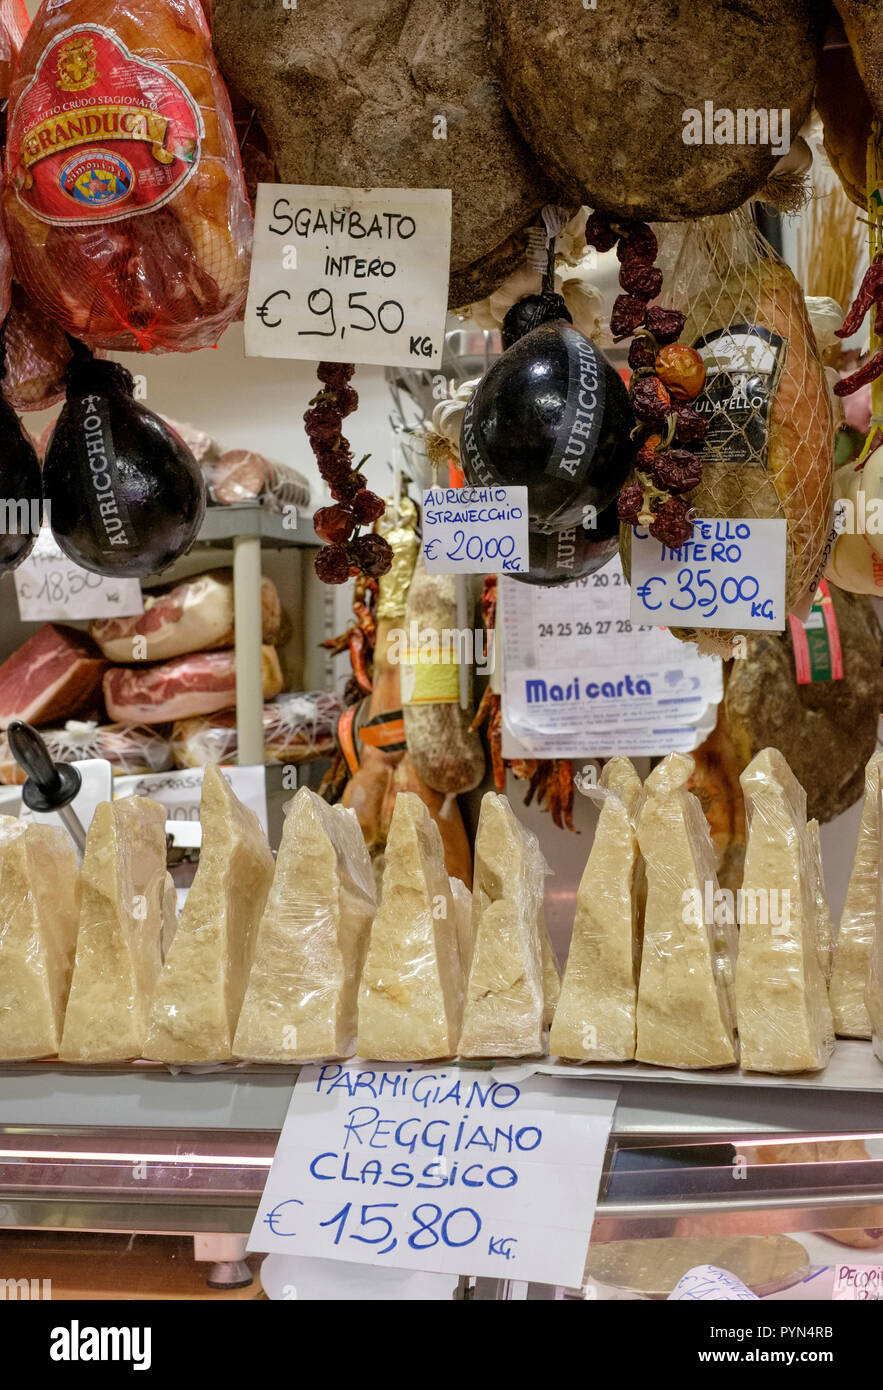 Visualización de Prosciutto Sgamabto jamón de Parma y Reggio classico en un puesto en el mercado en Florencia, Italia. Foto de stock